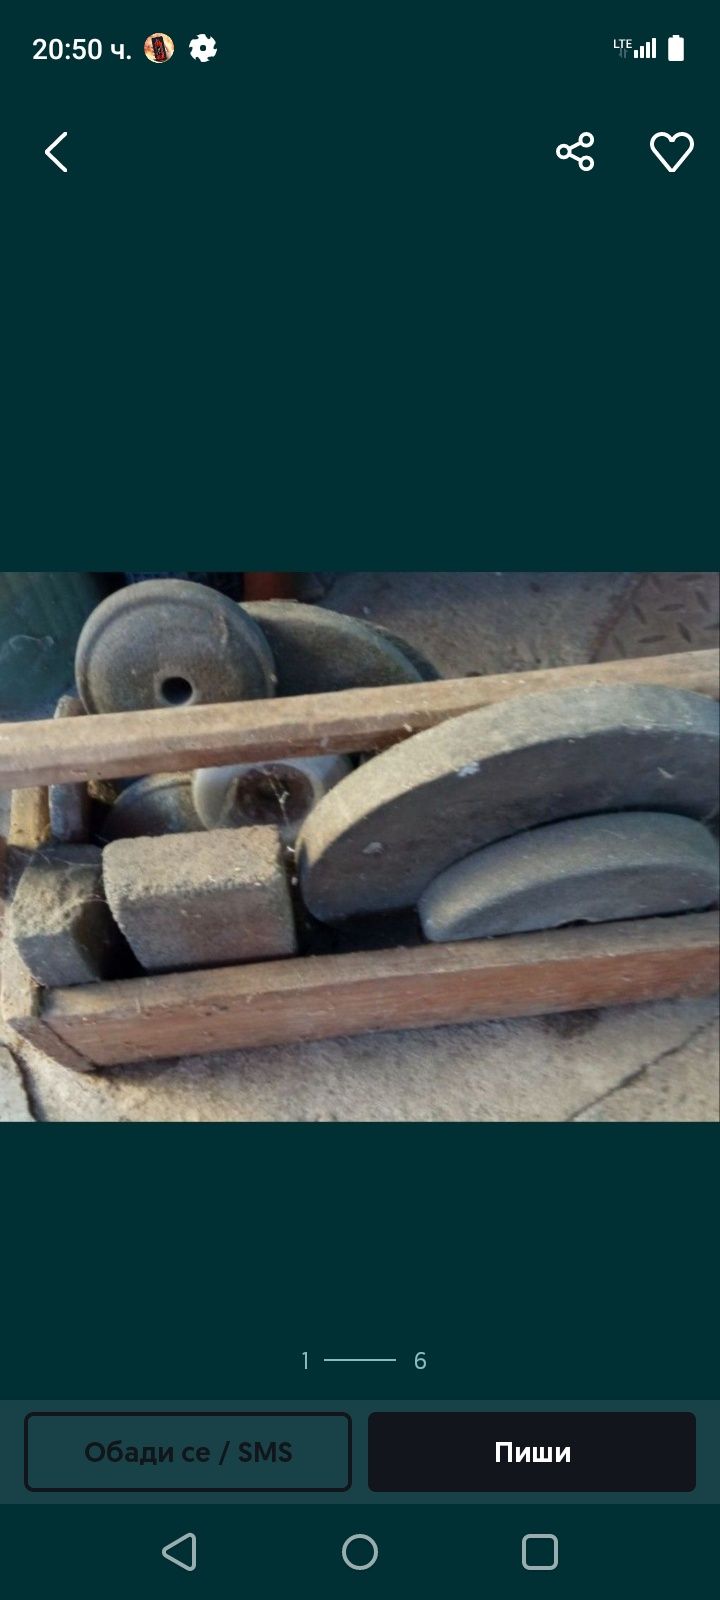 Стари инструменти - чукуве, клещи, пила; камъни за точене